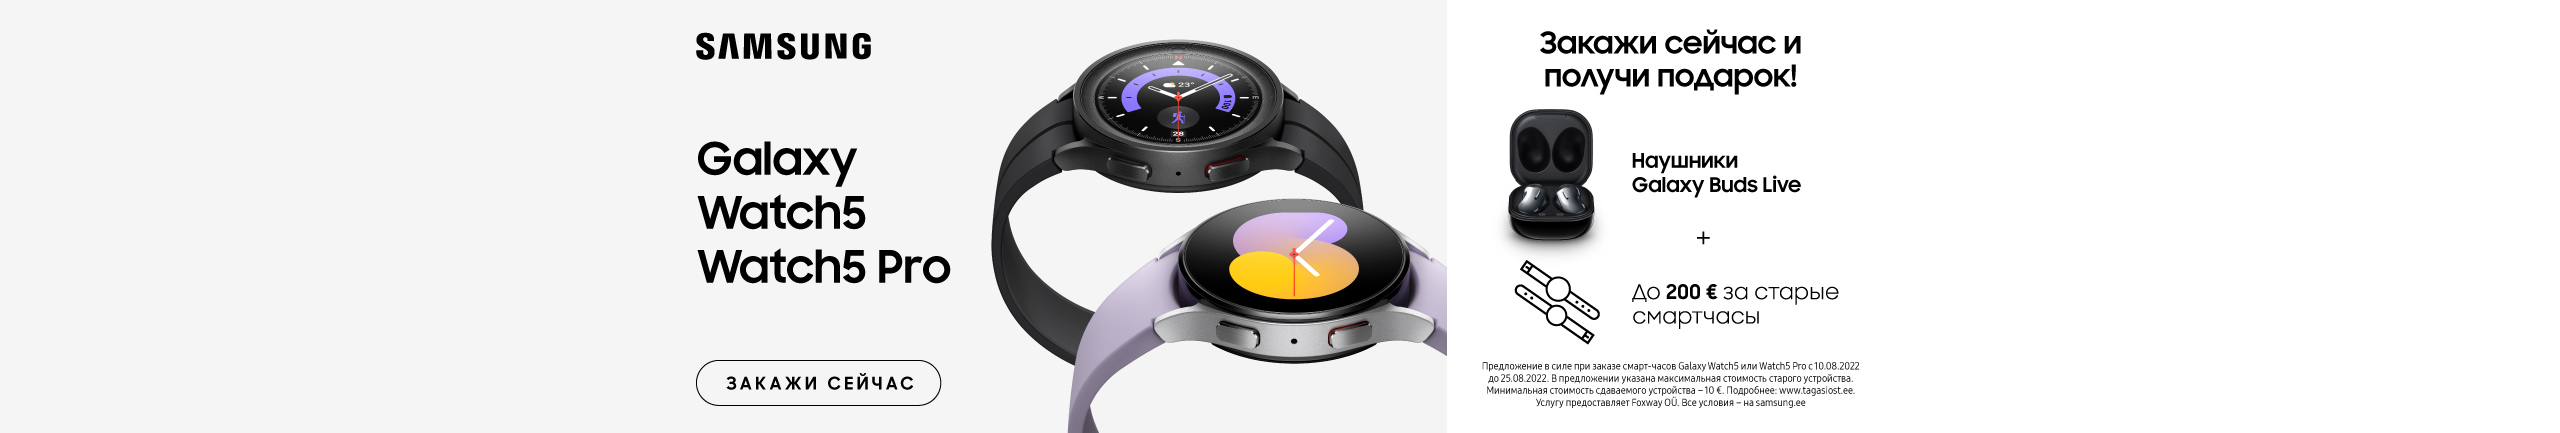 При покупке смарт-часов Samsung Galaxy Watch 5 или Watch 5 Pro Вы получите в подарок наушники Buds Live!